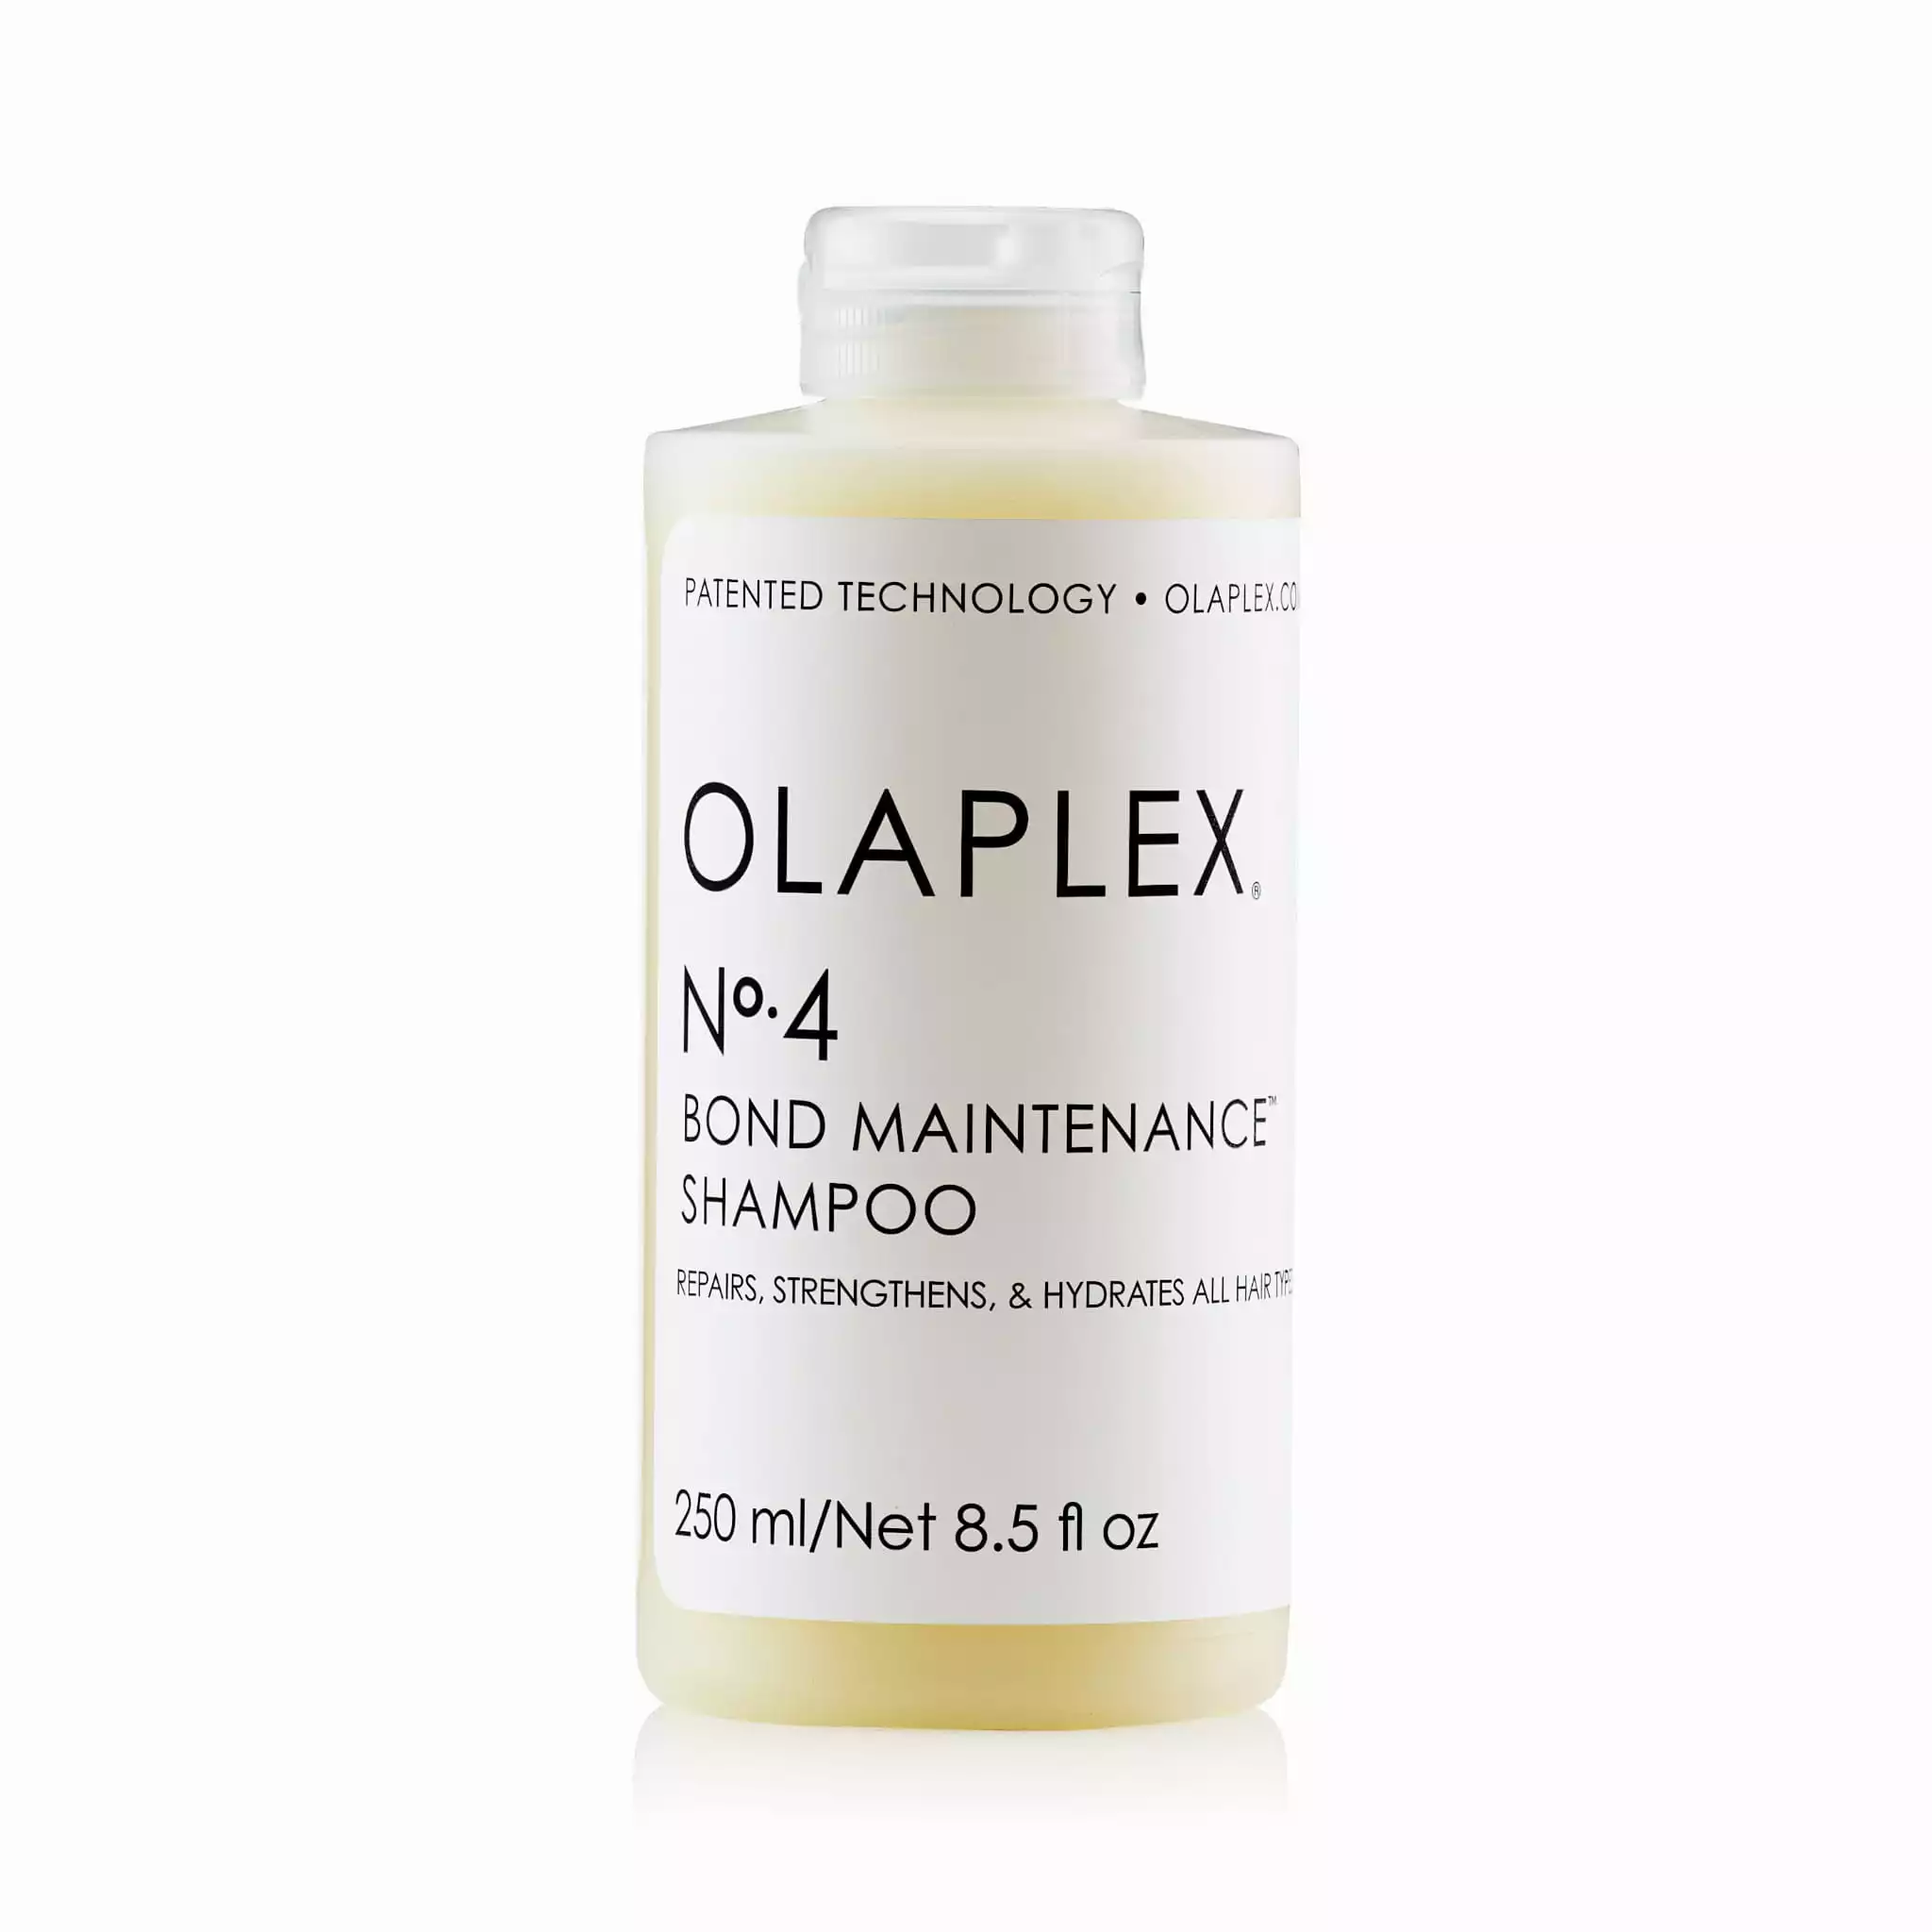 olaplex szampon nr 4